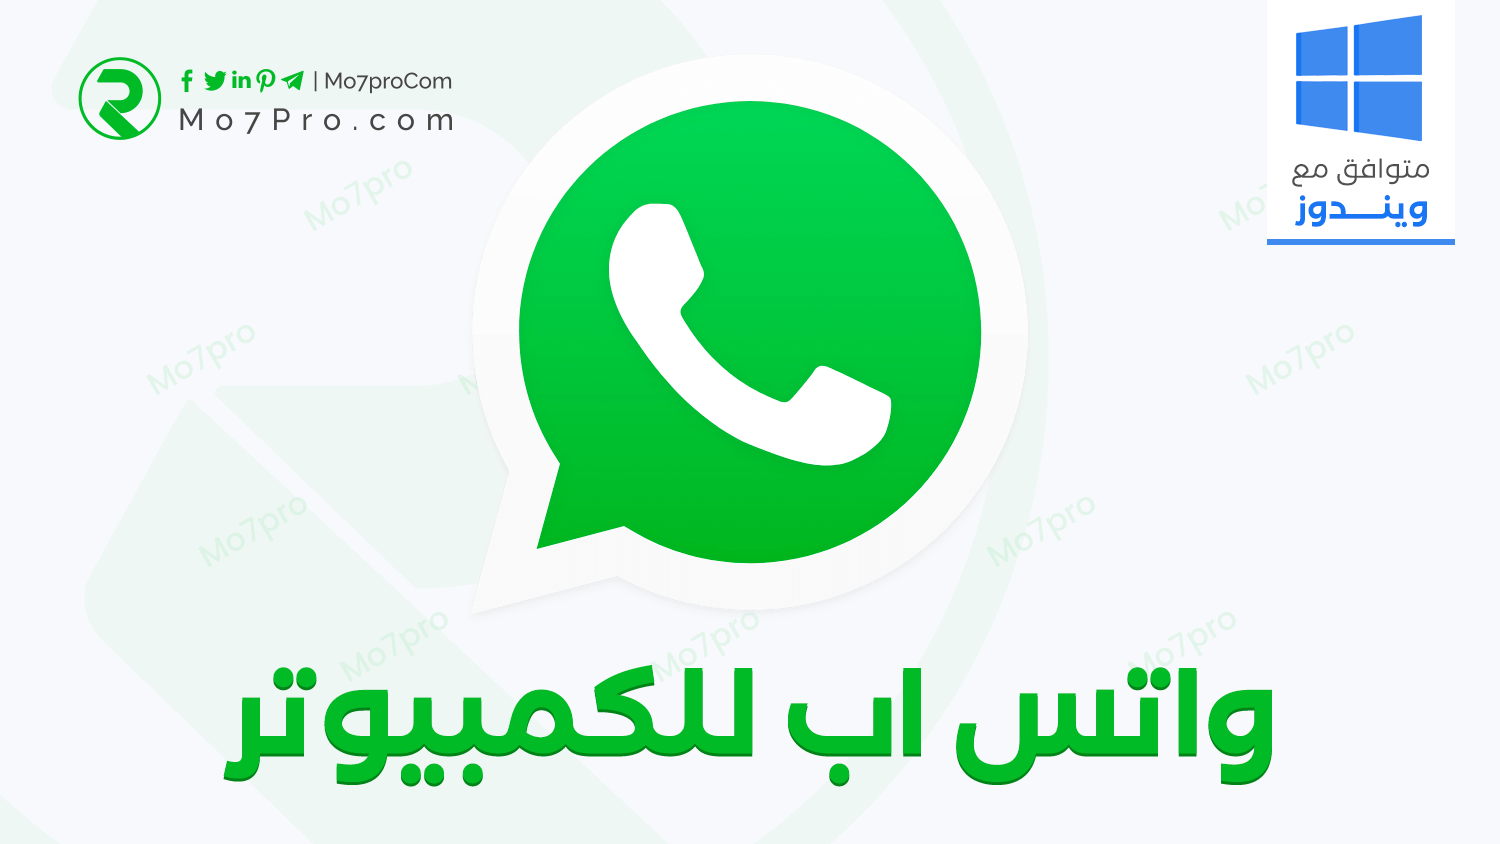 تحميل واتس اب ويب للكمبيوتر النسخة الاصلية اخر اصدار WhatsApp Web 2020